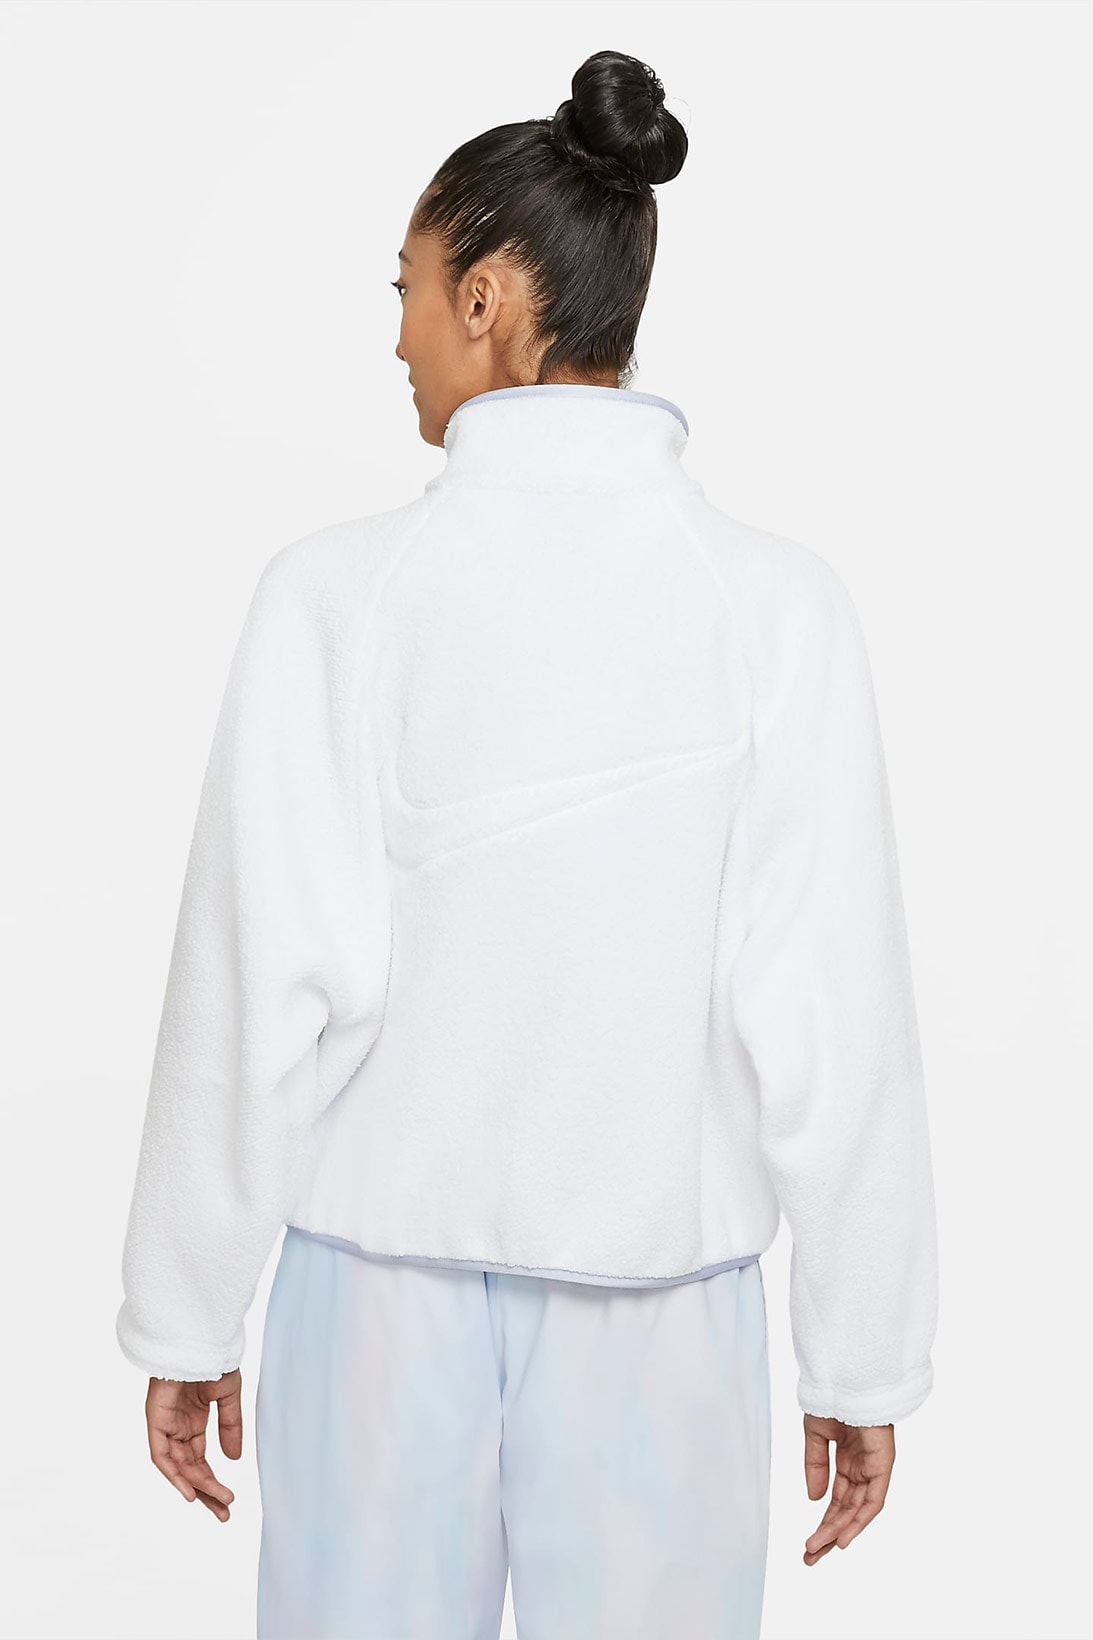 nike sportswear womens sherpa fleece jacket outerwear white ghost back sweatpants